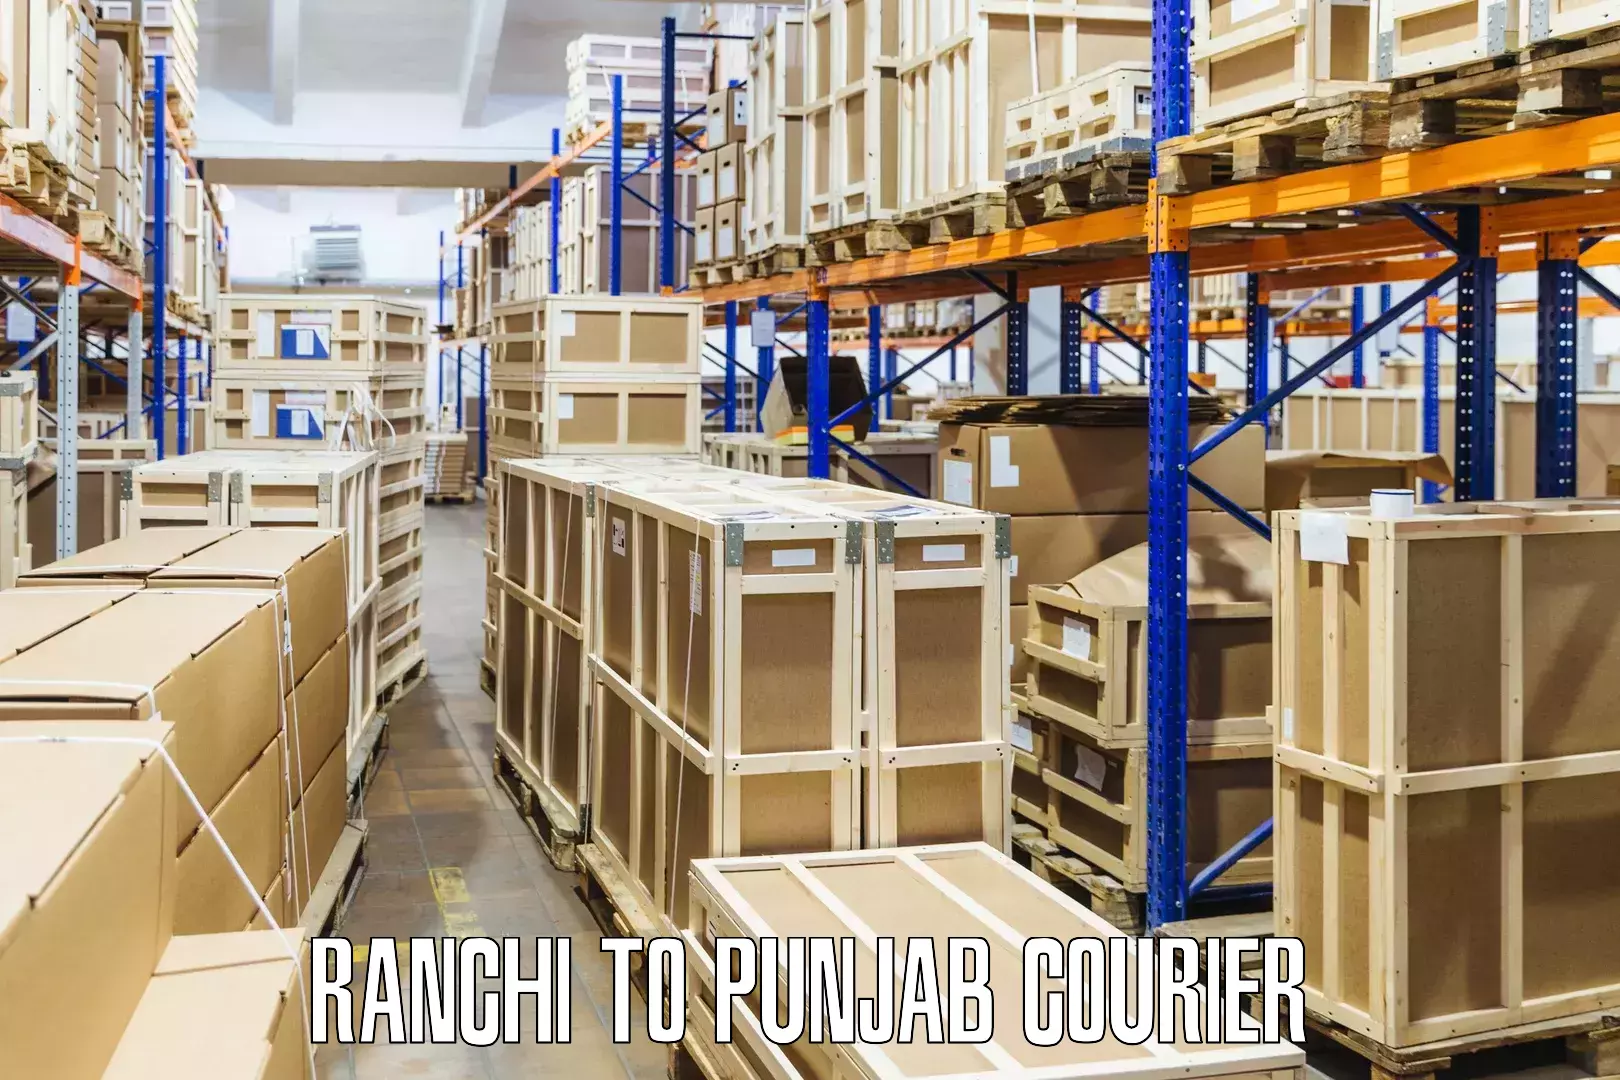 Personal parcel delivery Ranchi to Patran